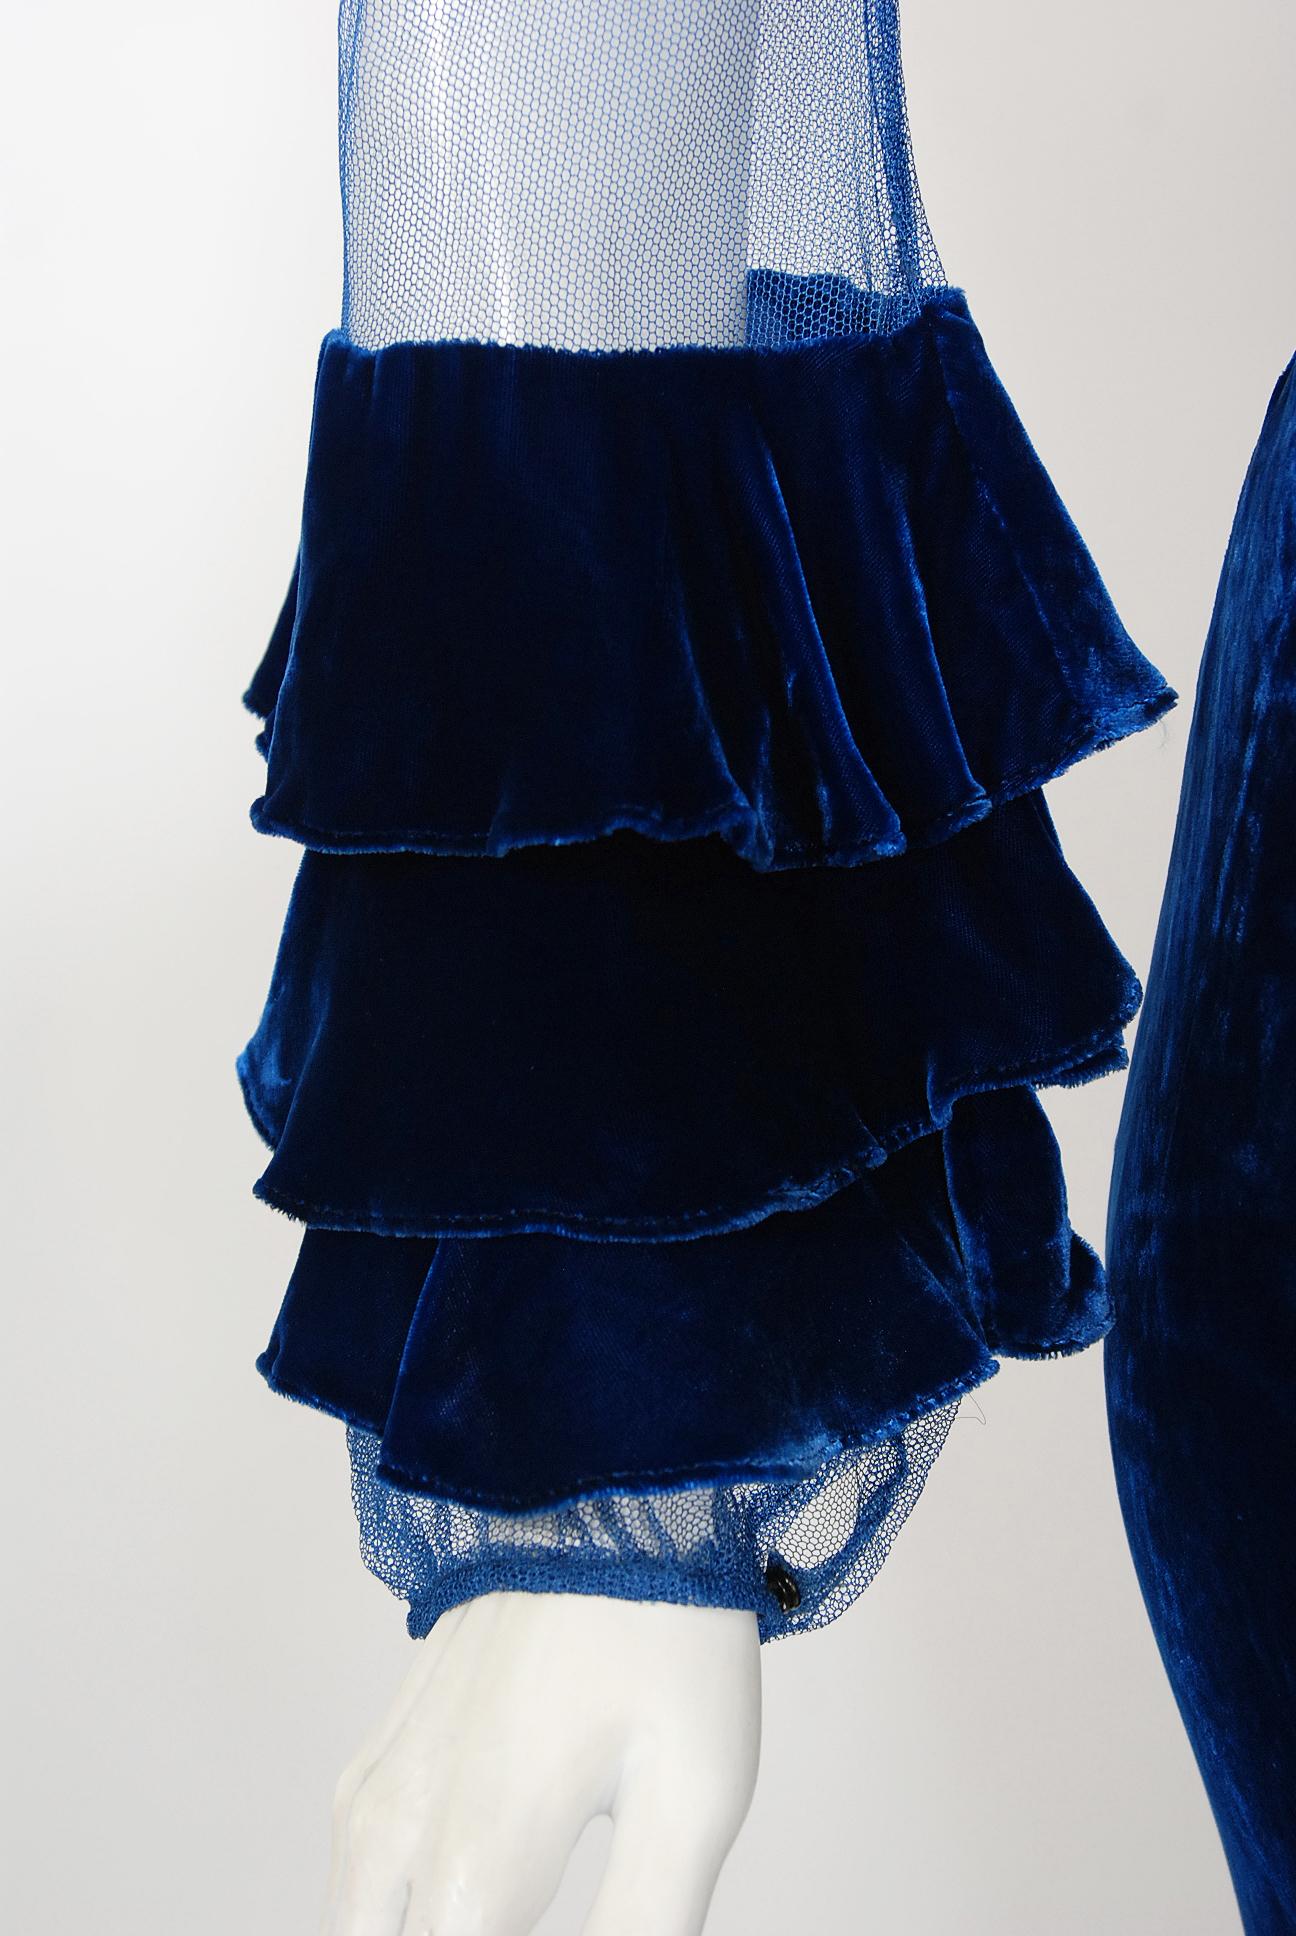 sapphire blue velvet dress